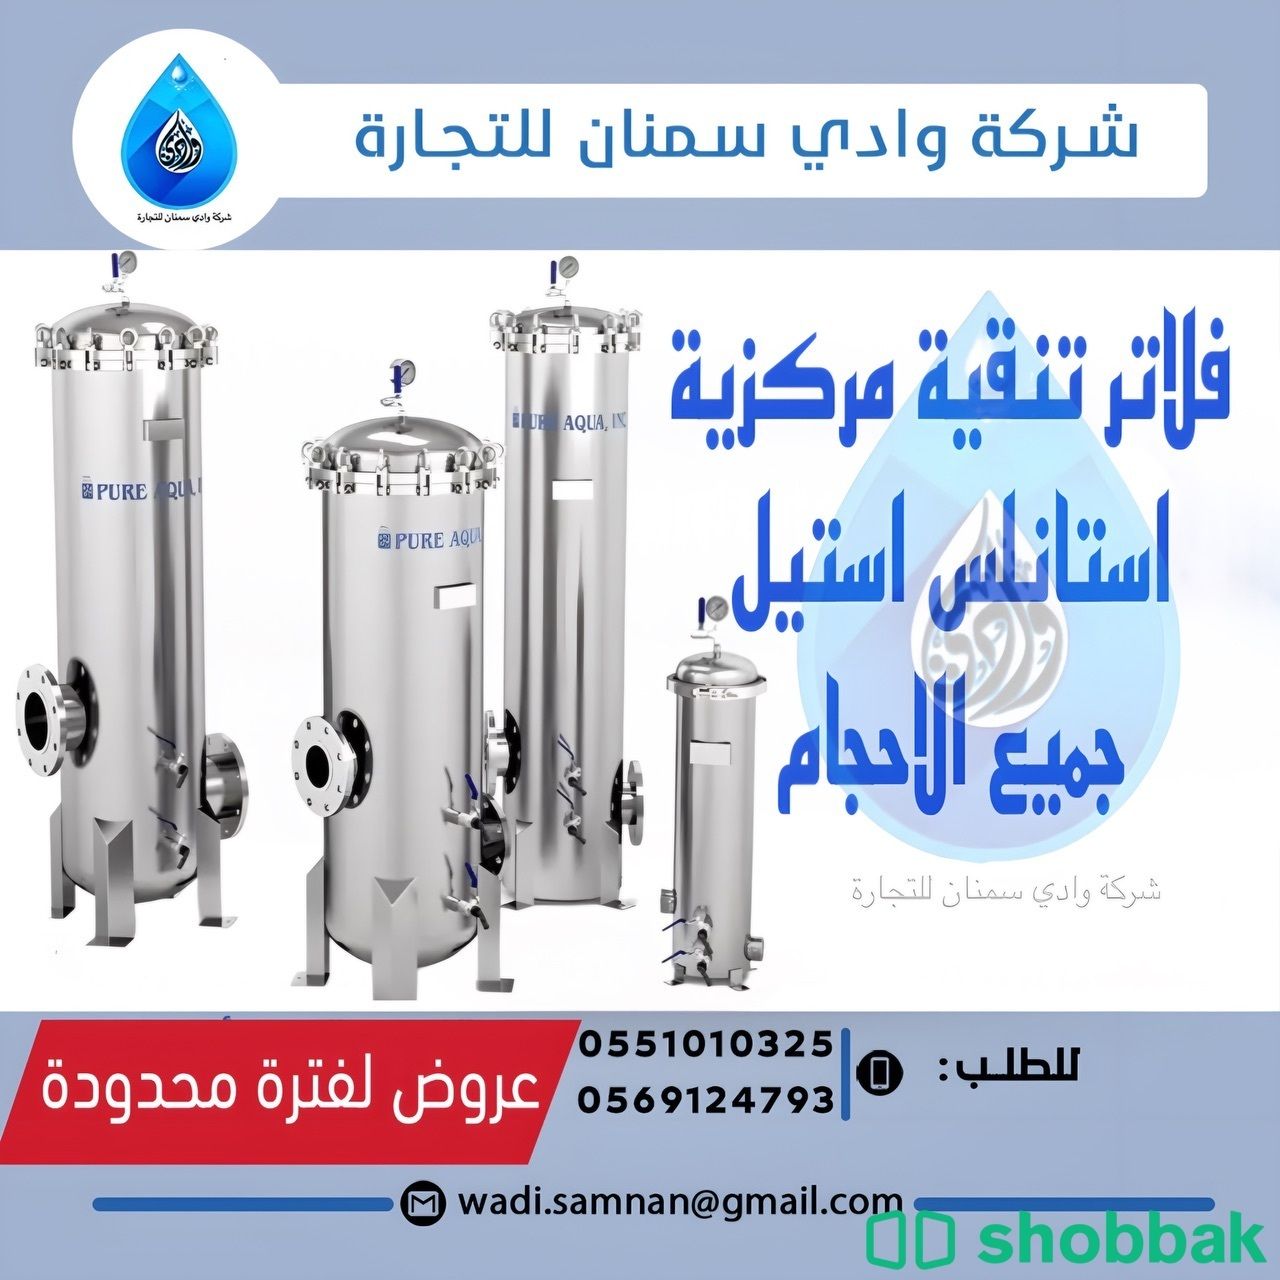 فلاتر مركزية لتنقية المياه أستانلس أستيل من شركة وادي سمنان Shobbak Saudi Arabia